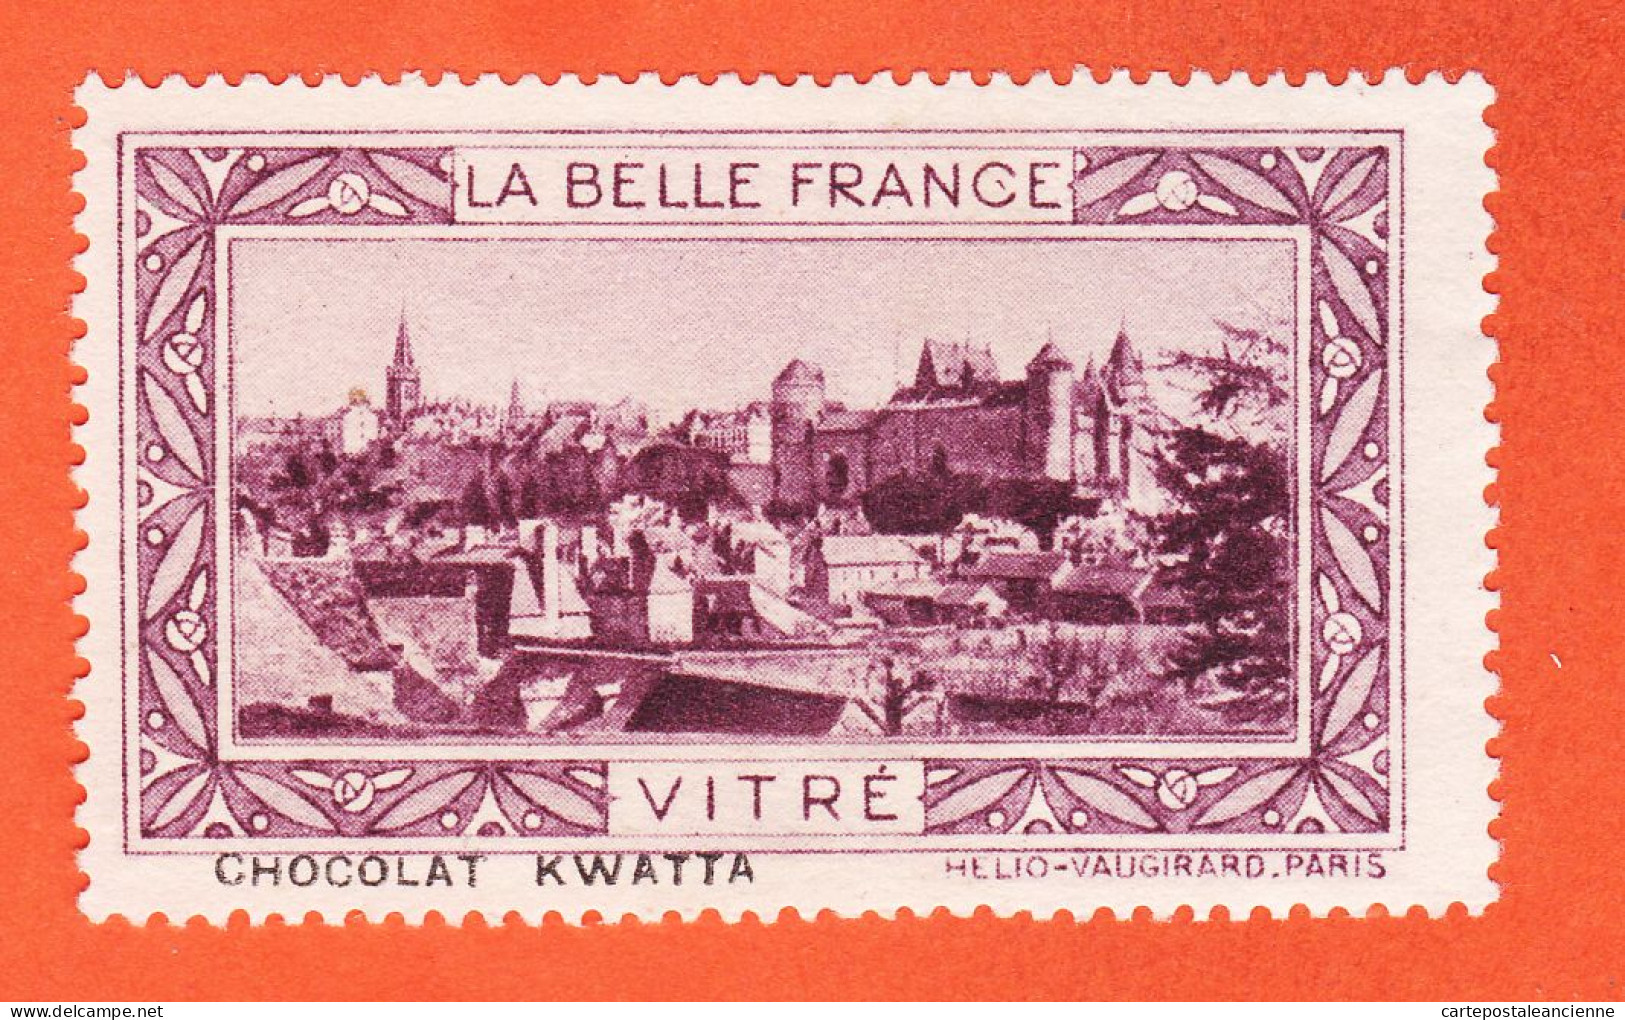 13004 / ⭐ ◉ VITRE (Violet) 35-Ille Vilaine Chateau Pub Chocolat KWATTA Vignette Collection BELLE FRANCE HELIO-VAUGIRARD - Tourisme (Vignettes)